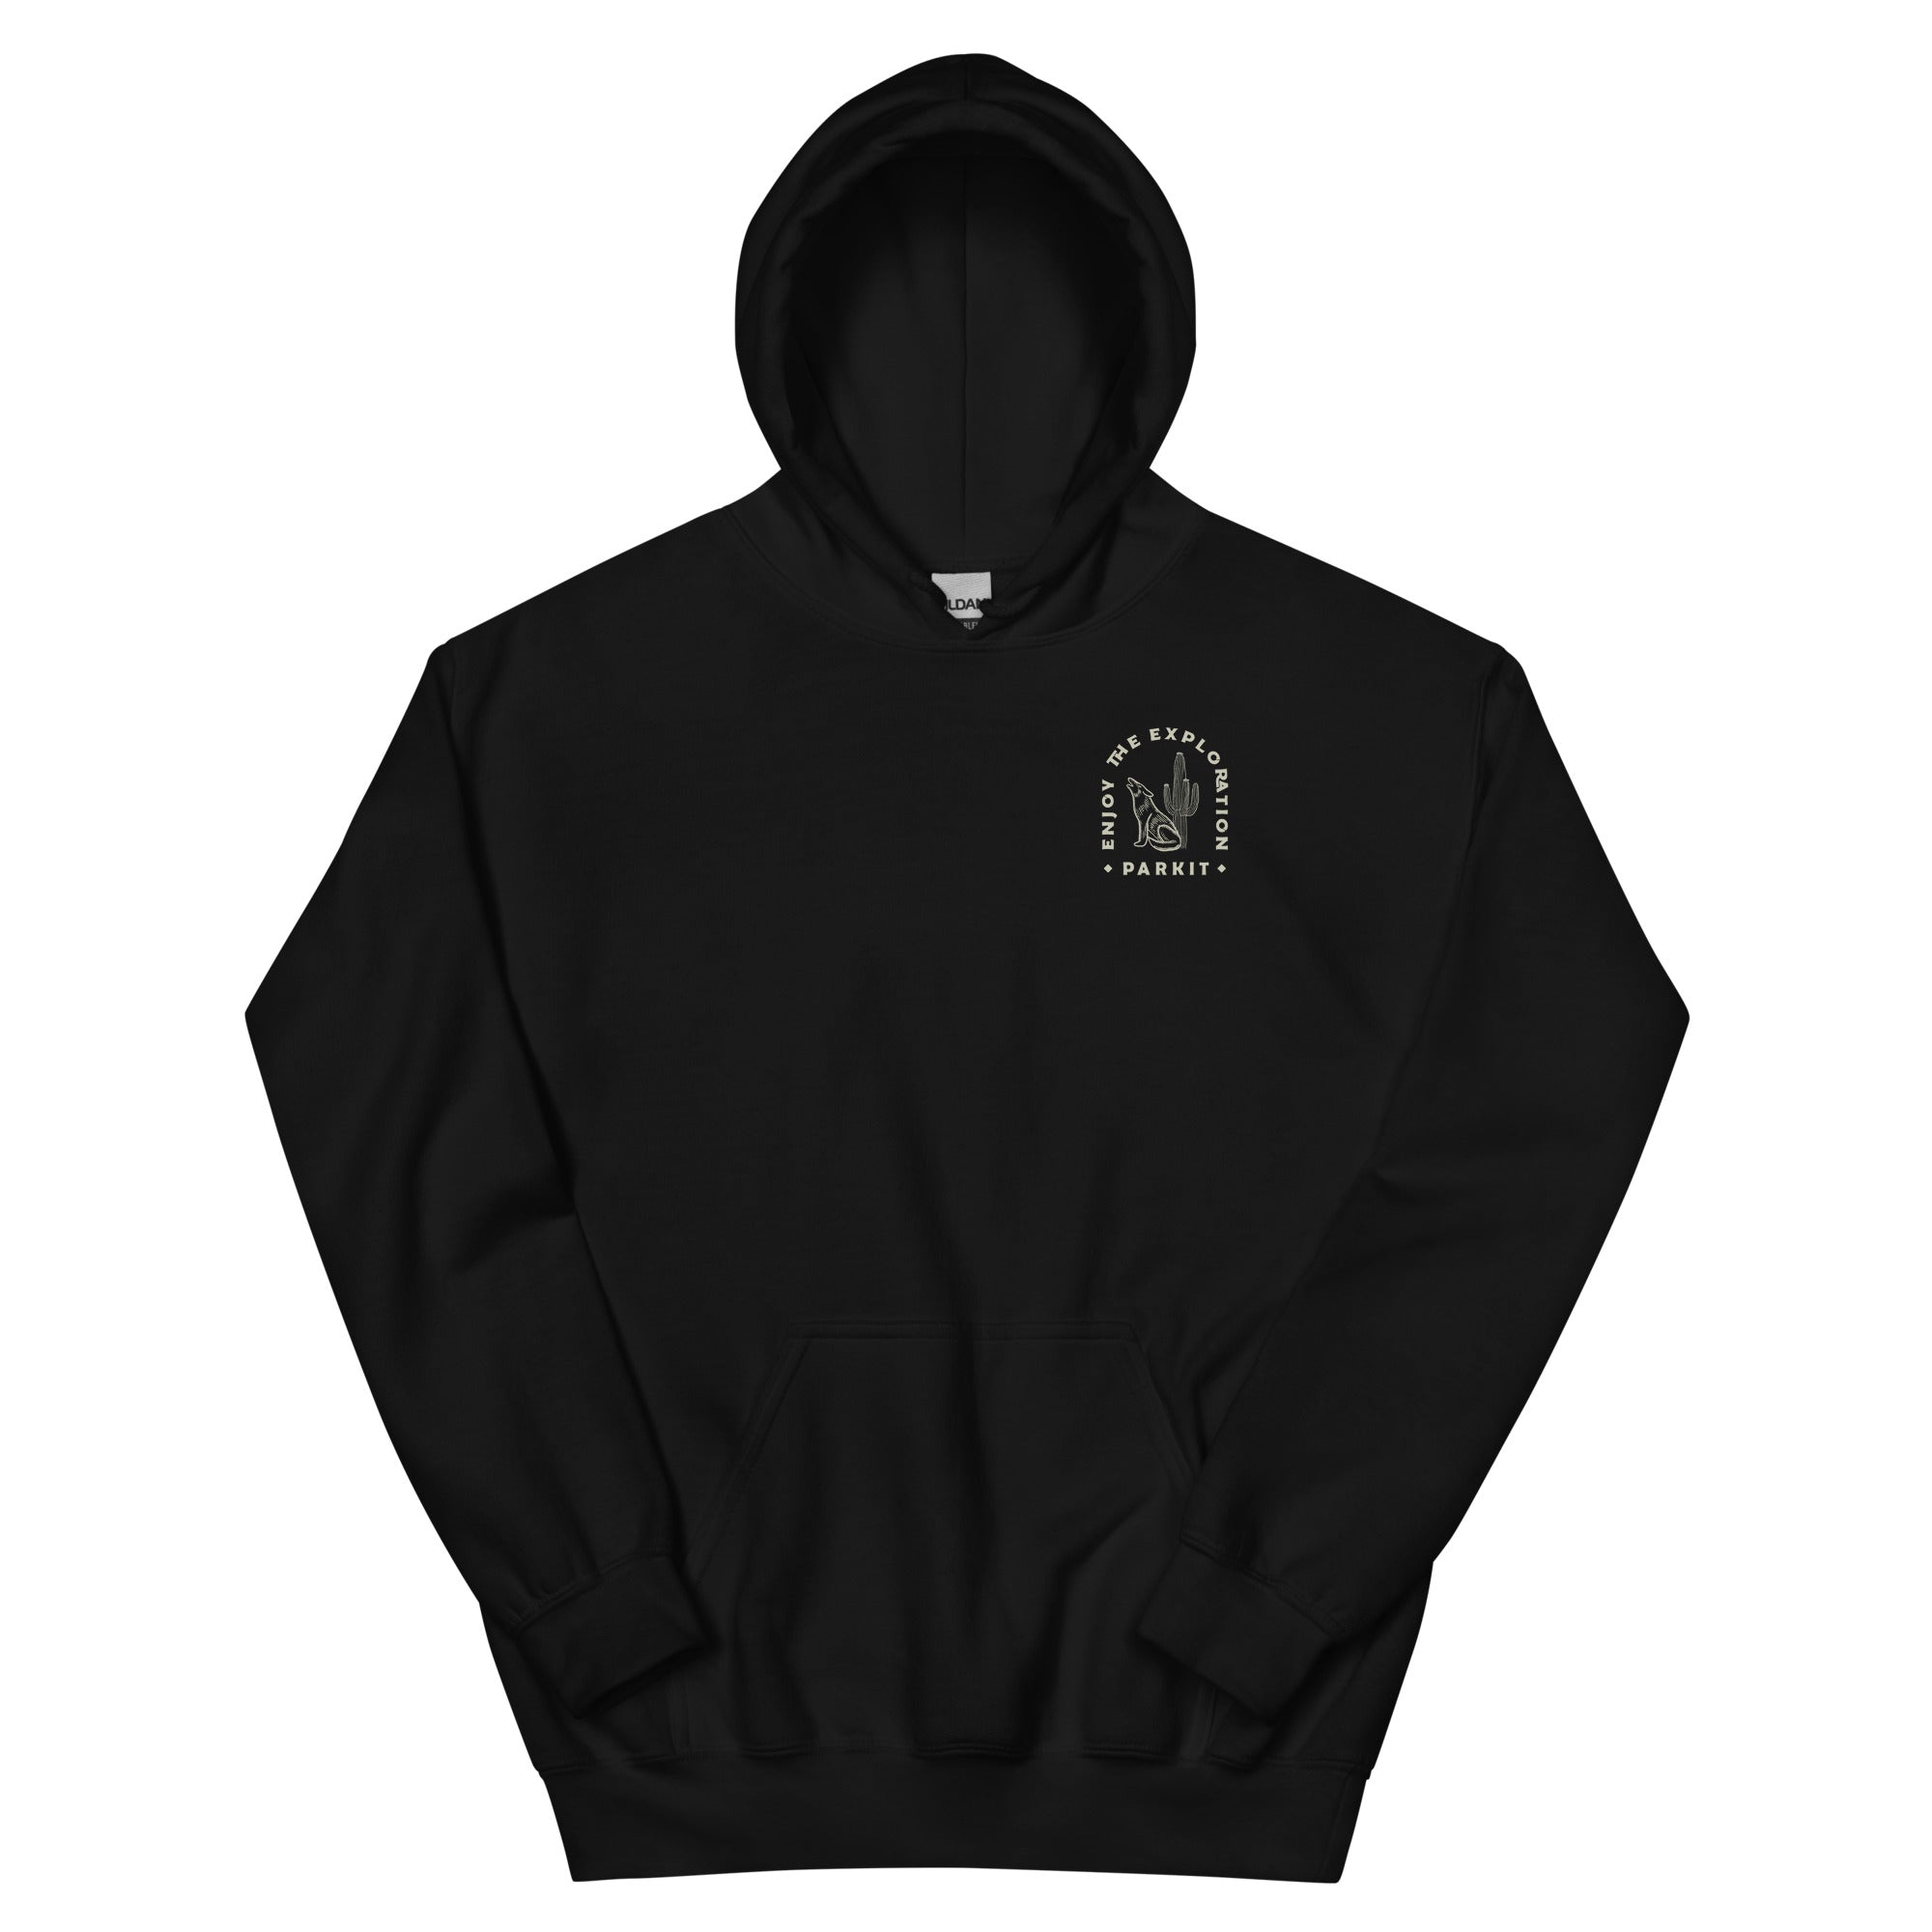 unisex-heavy-blend-hoodie-black-front-643c611dbe84c.jpg